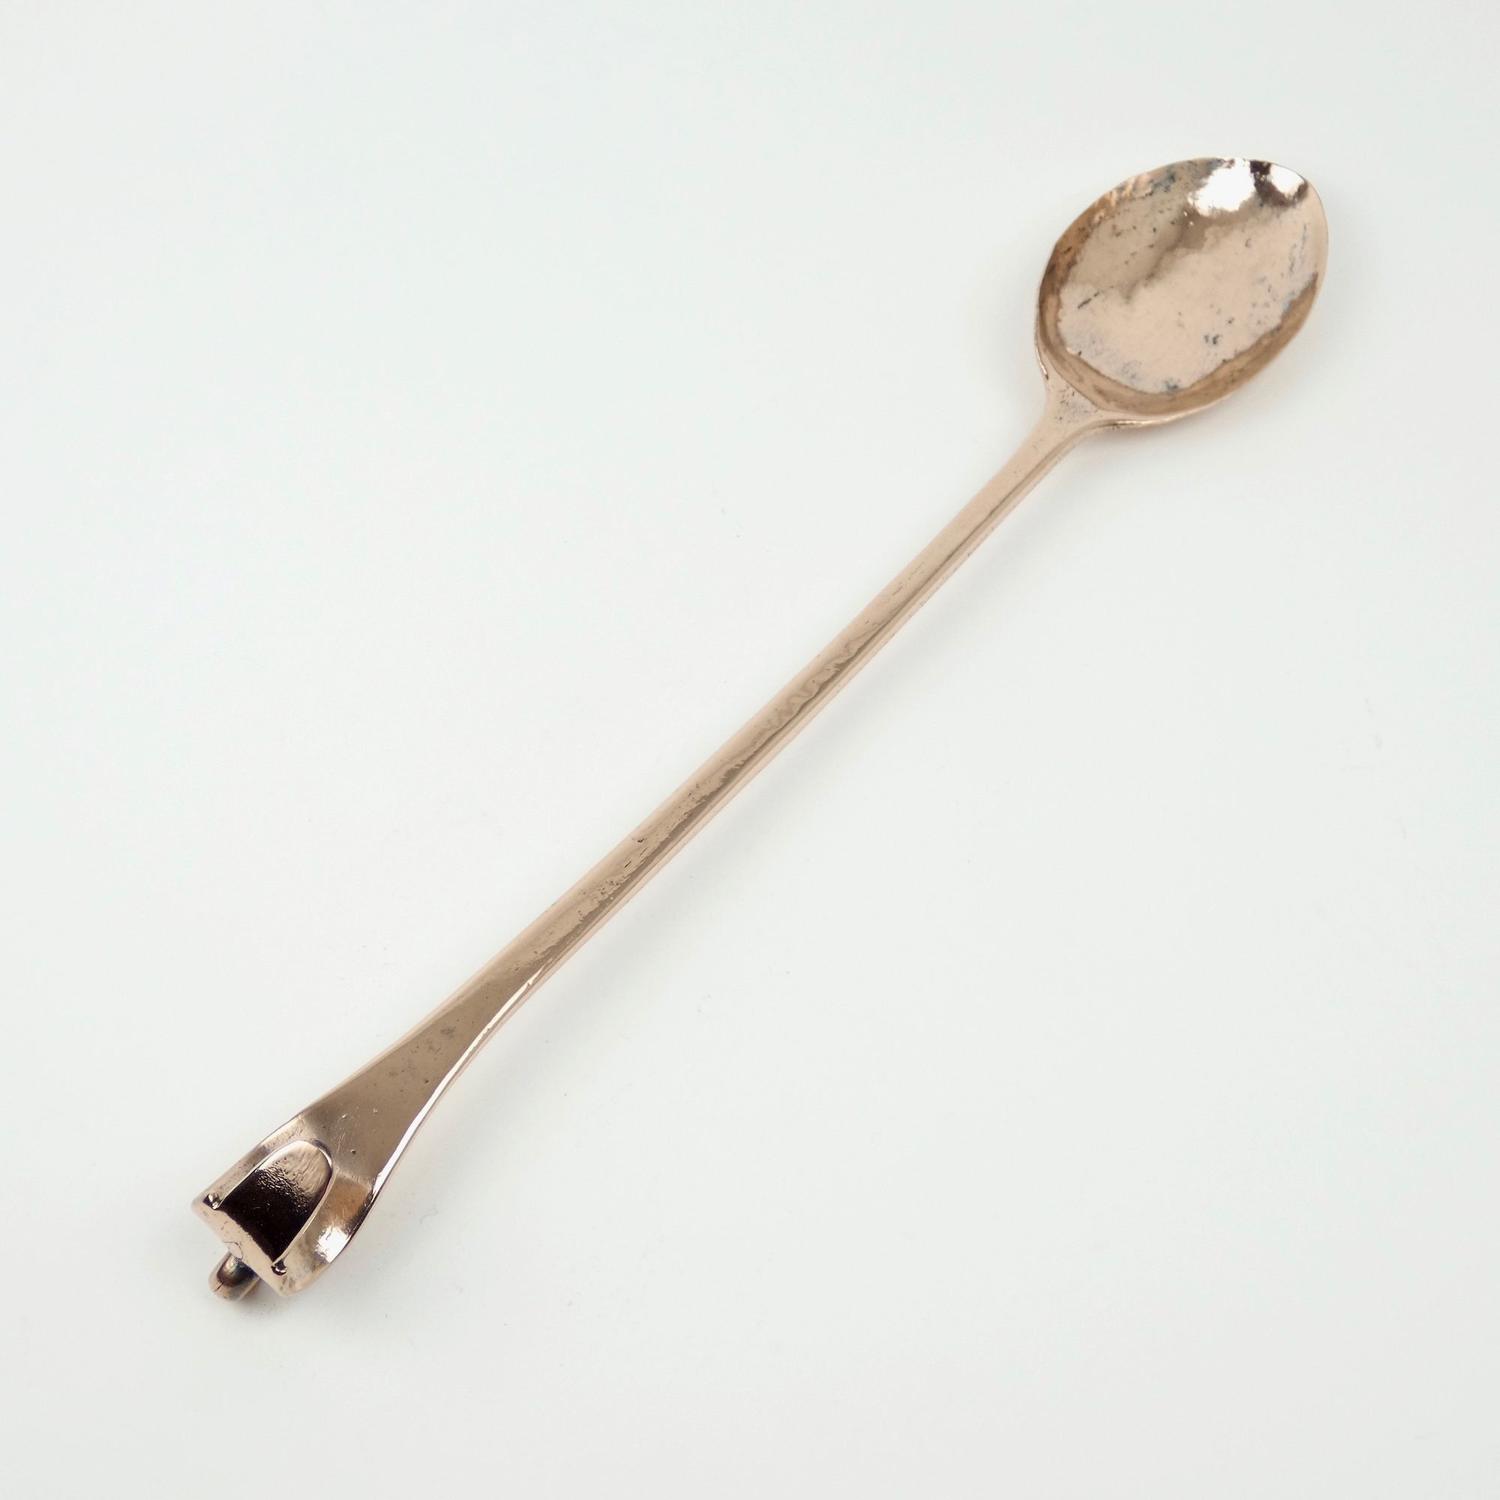 Victorian copper basting spoon